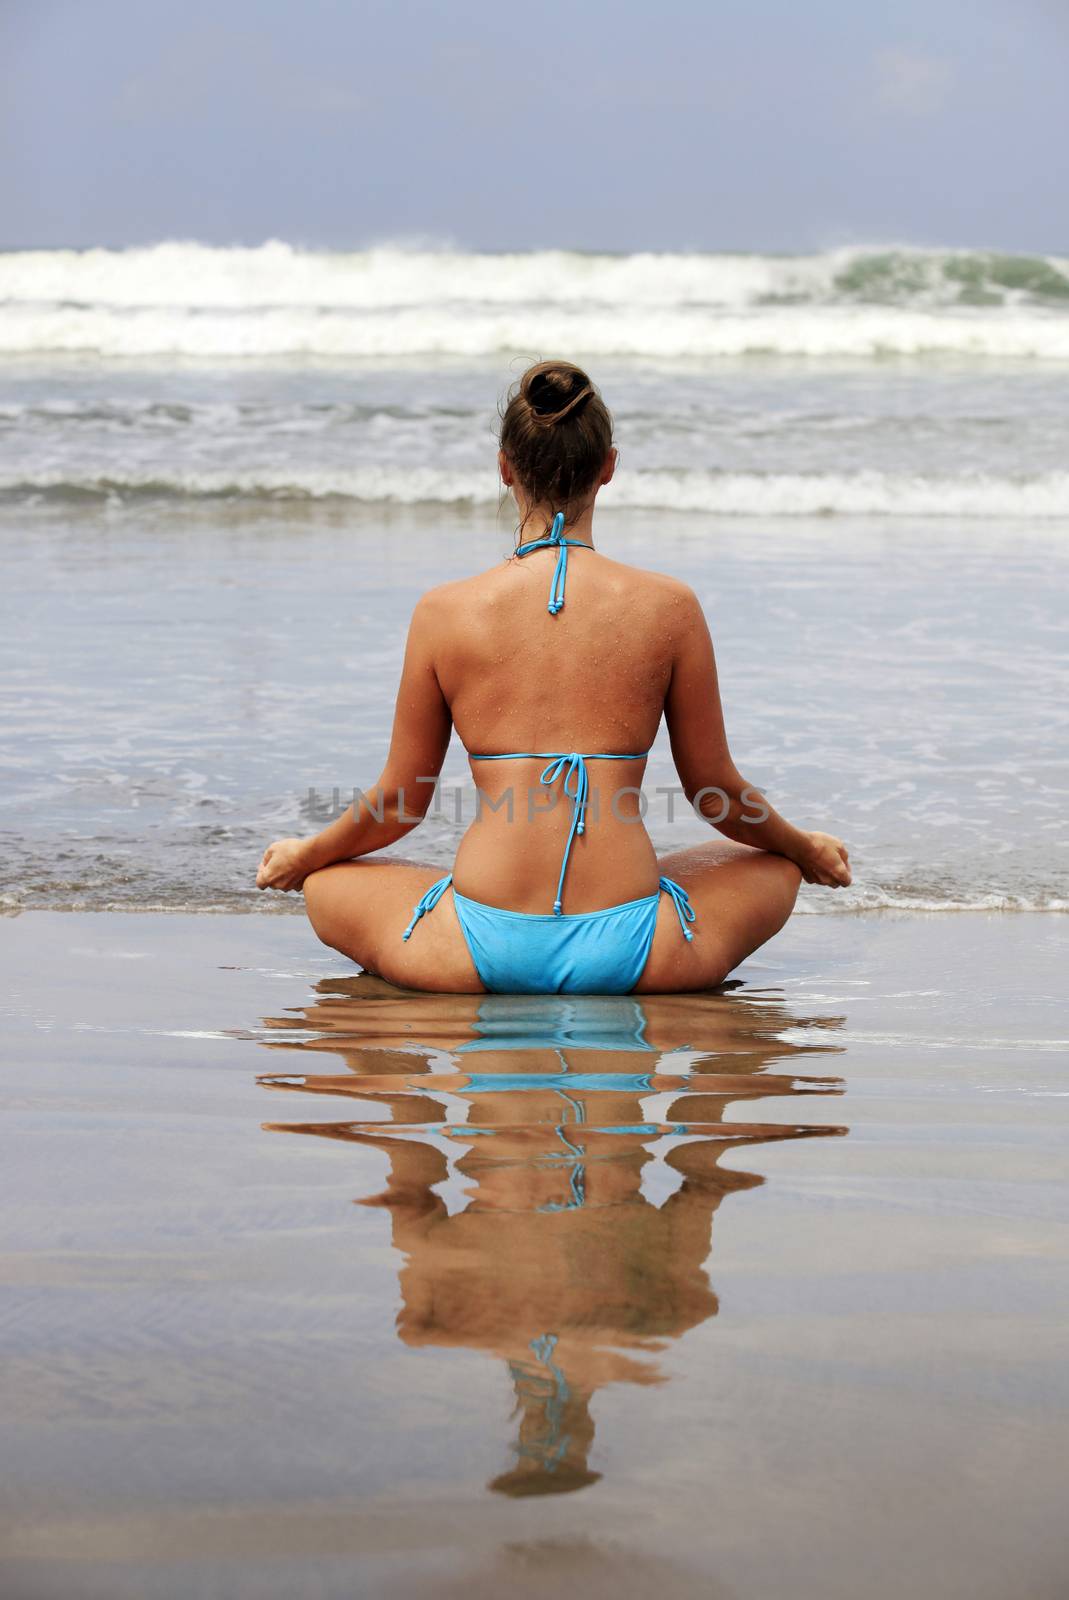 Meditation girl yoga on the beach